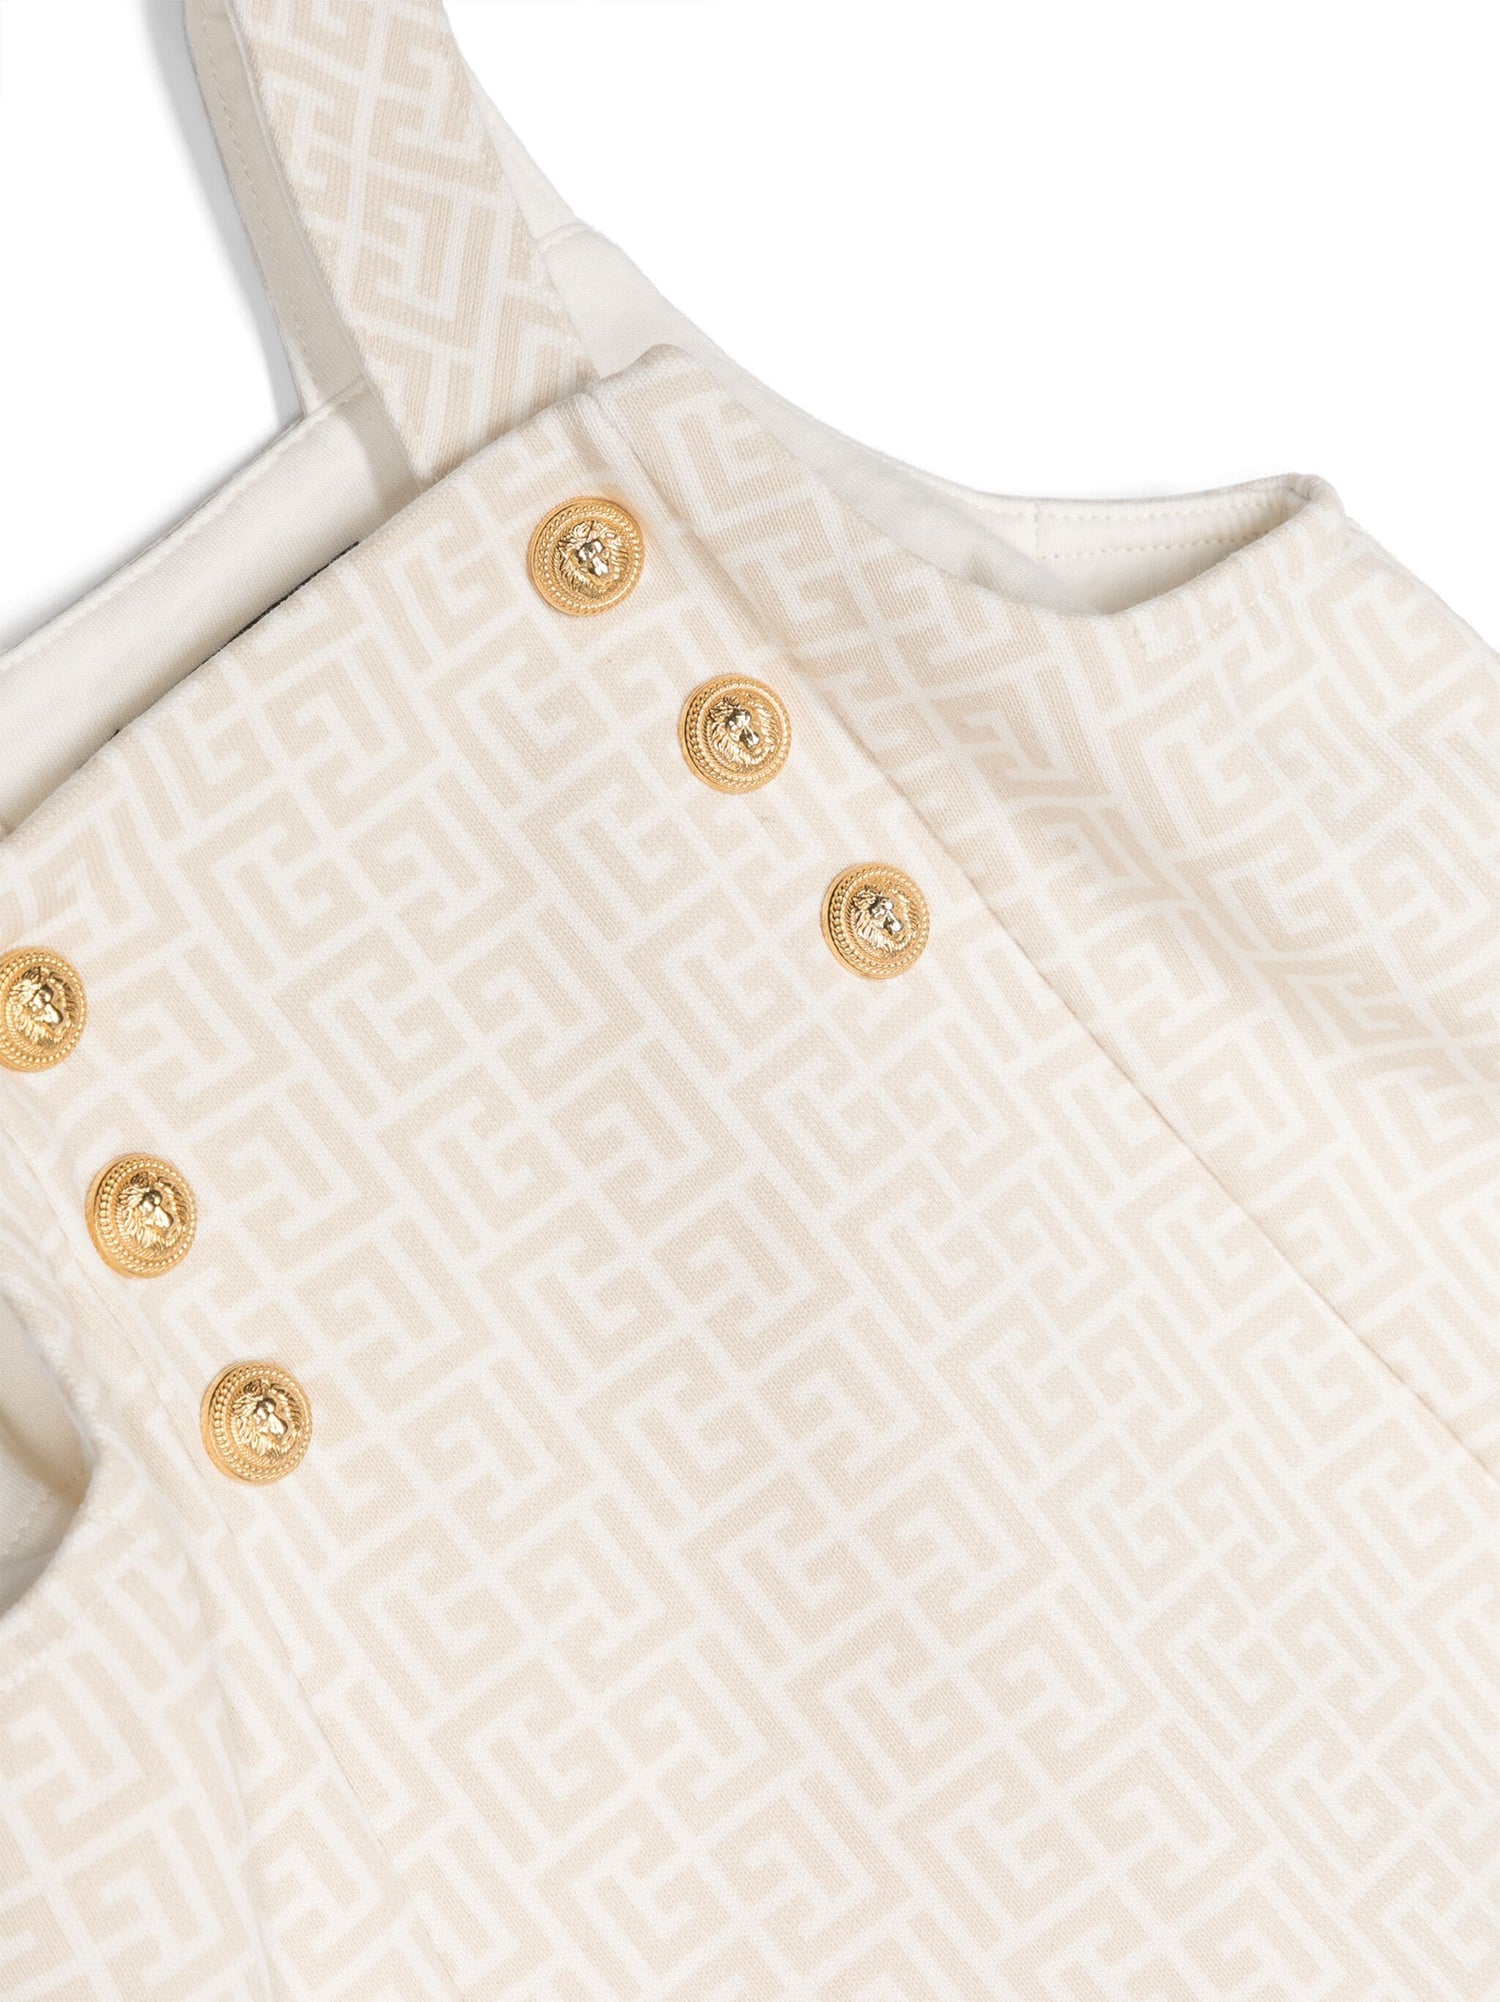 Balmain Baby Monogram Pattern Cotton Babygrow Set